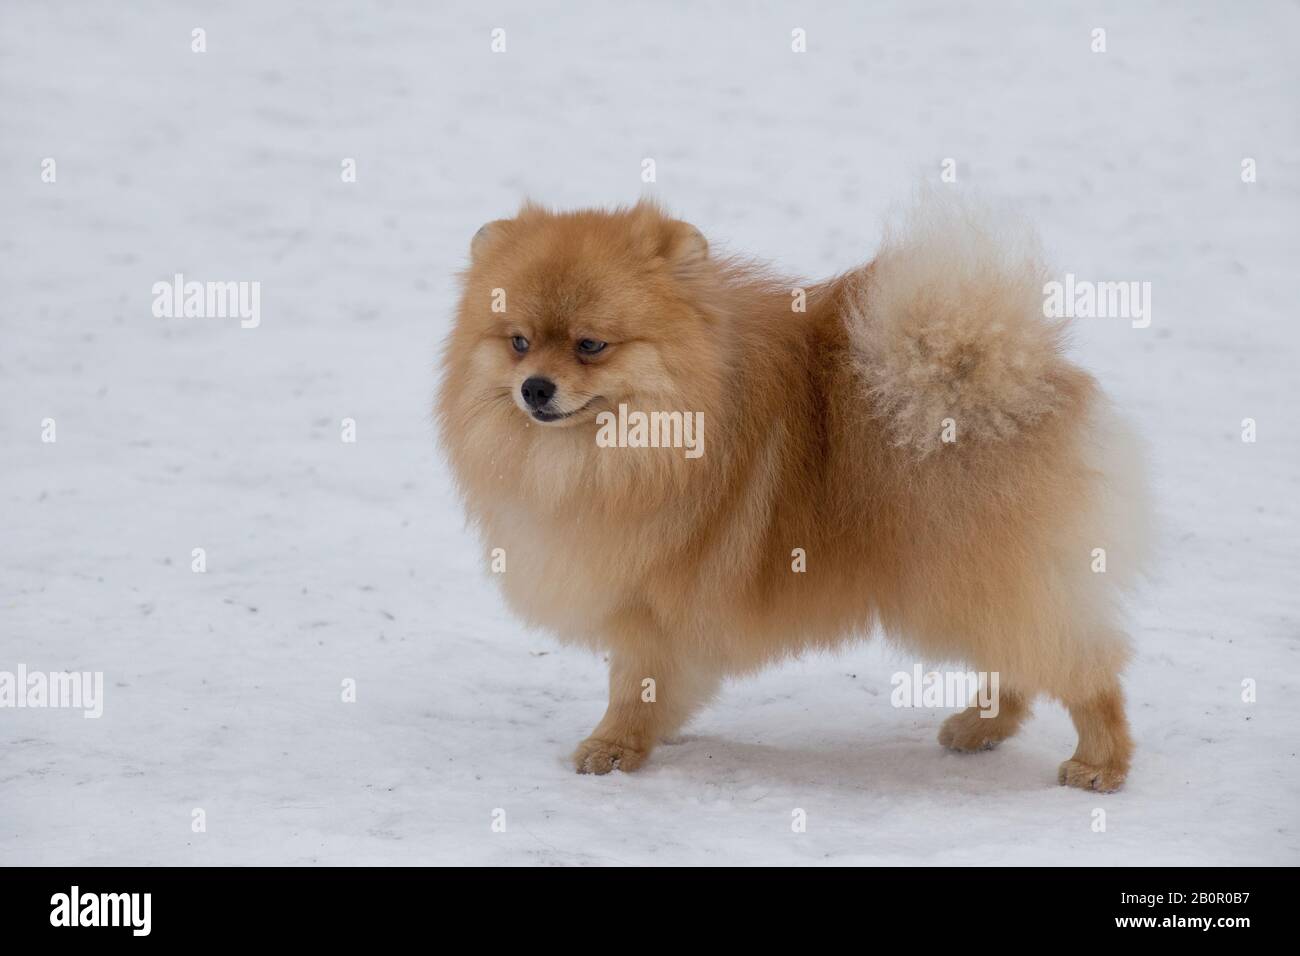 Il cucciolo di spitz, rosso e da non perdere, si erge su una neve bianca nel parco invernale. Deutscher spitz o zwergspitz. Animali domestici. Foto Stock